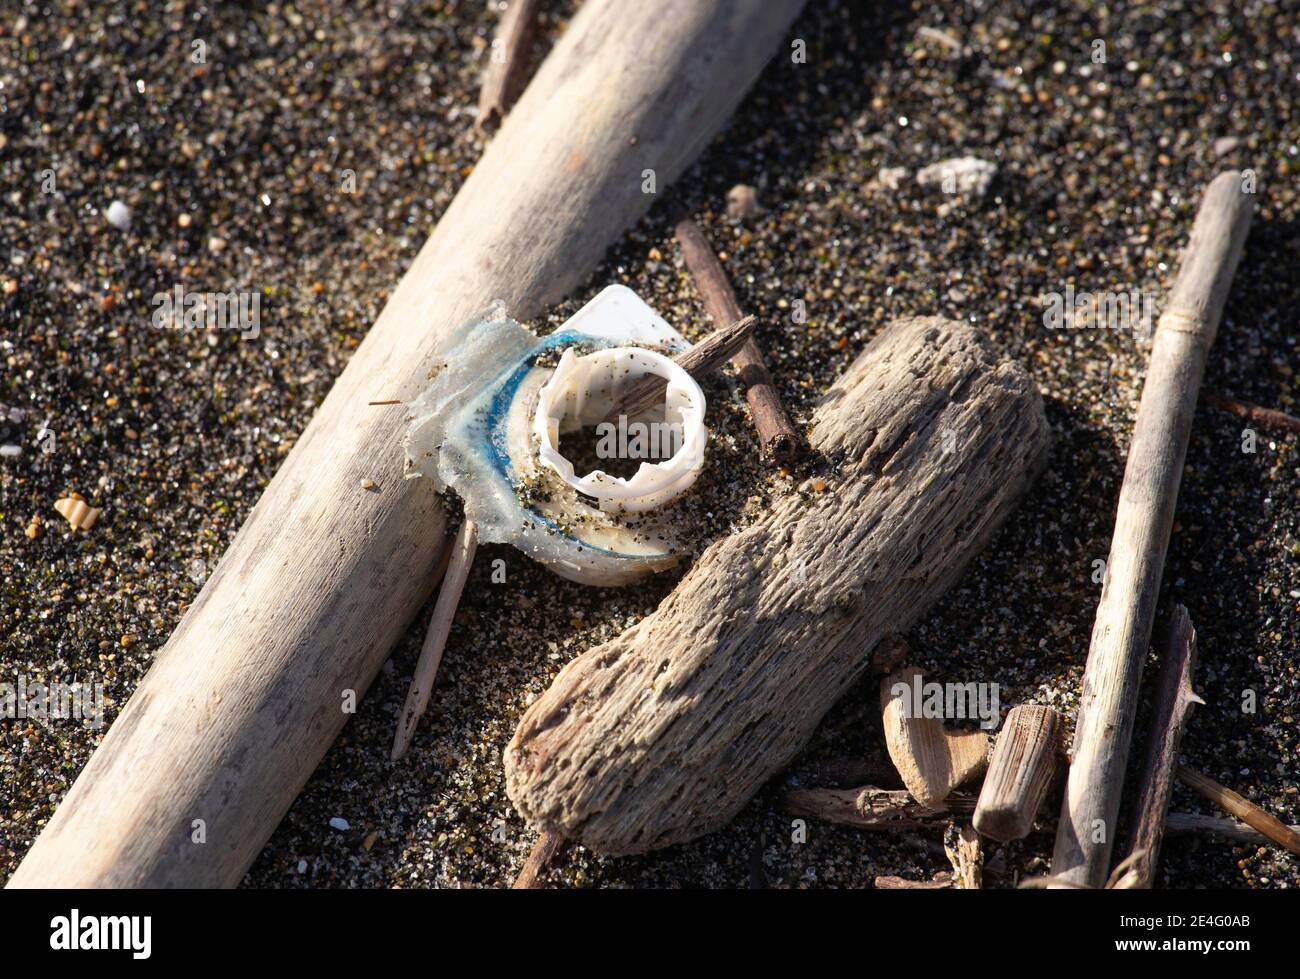 Plastica ininante riversata sul litorale dopo ogni mareggiata Stockfoto